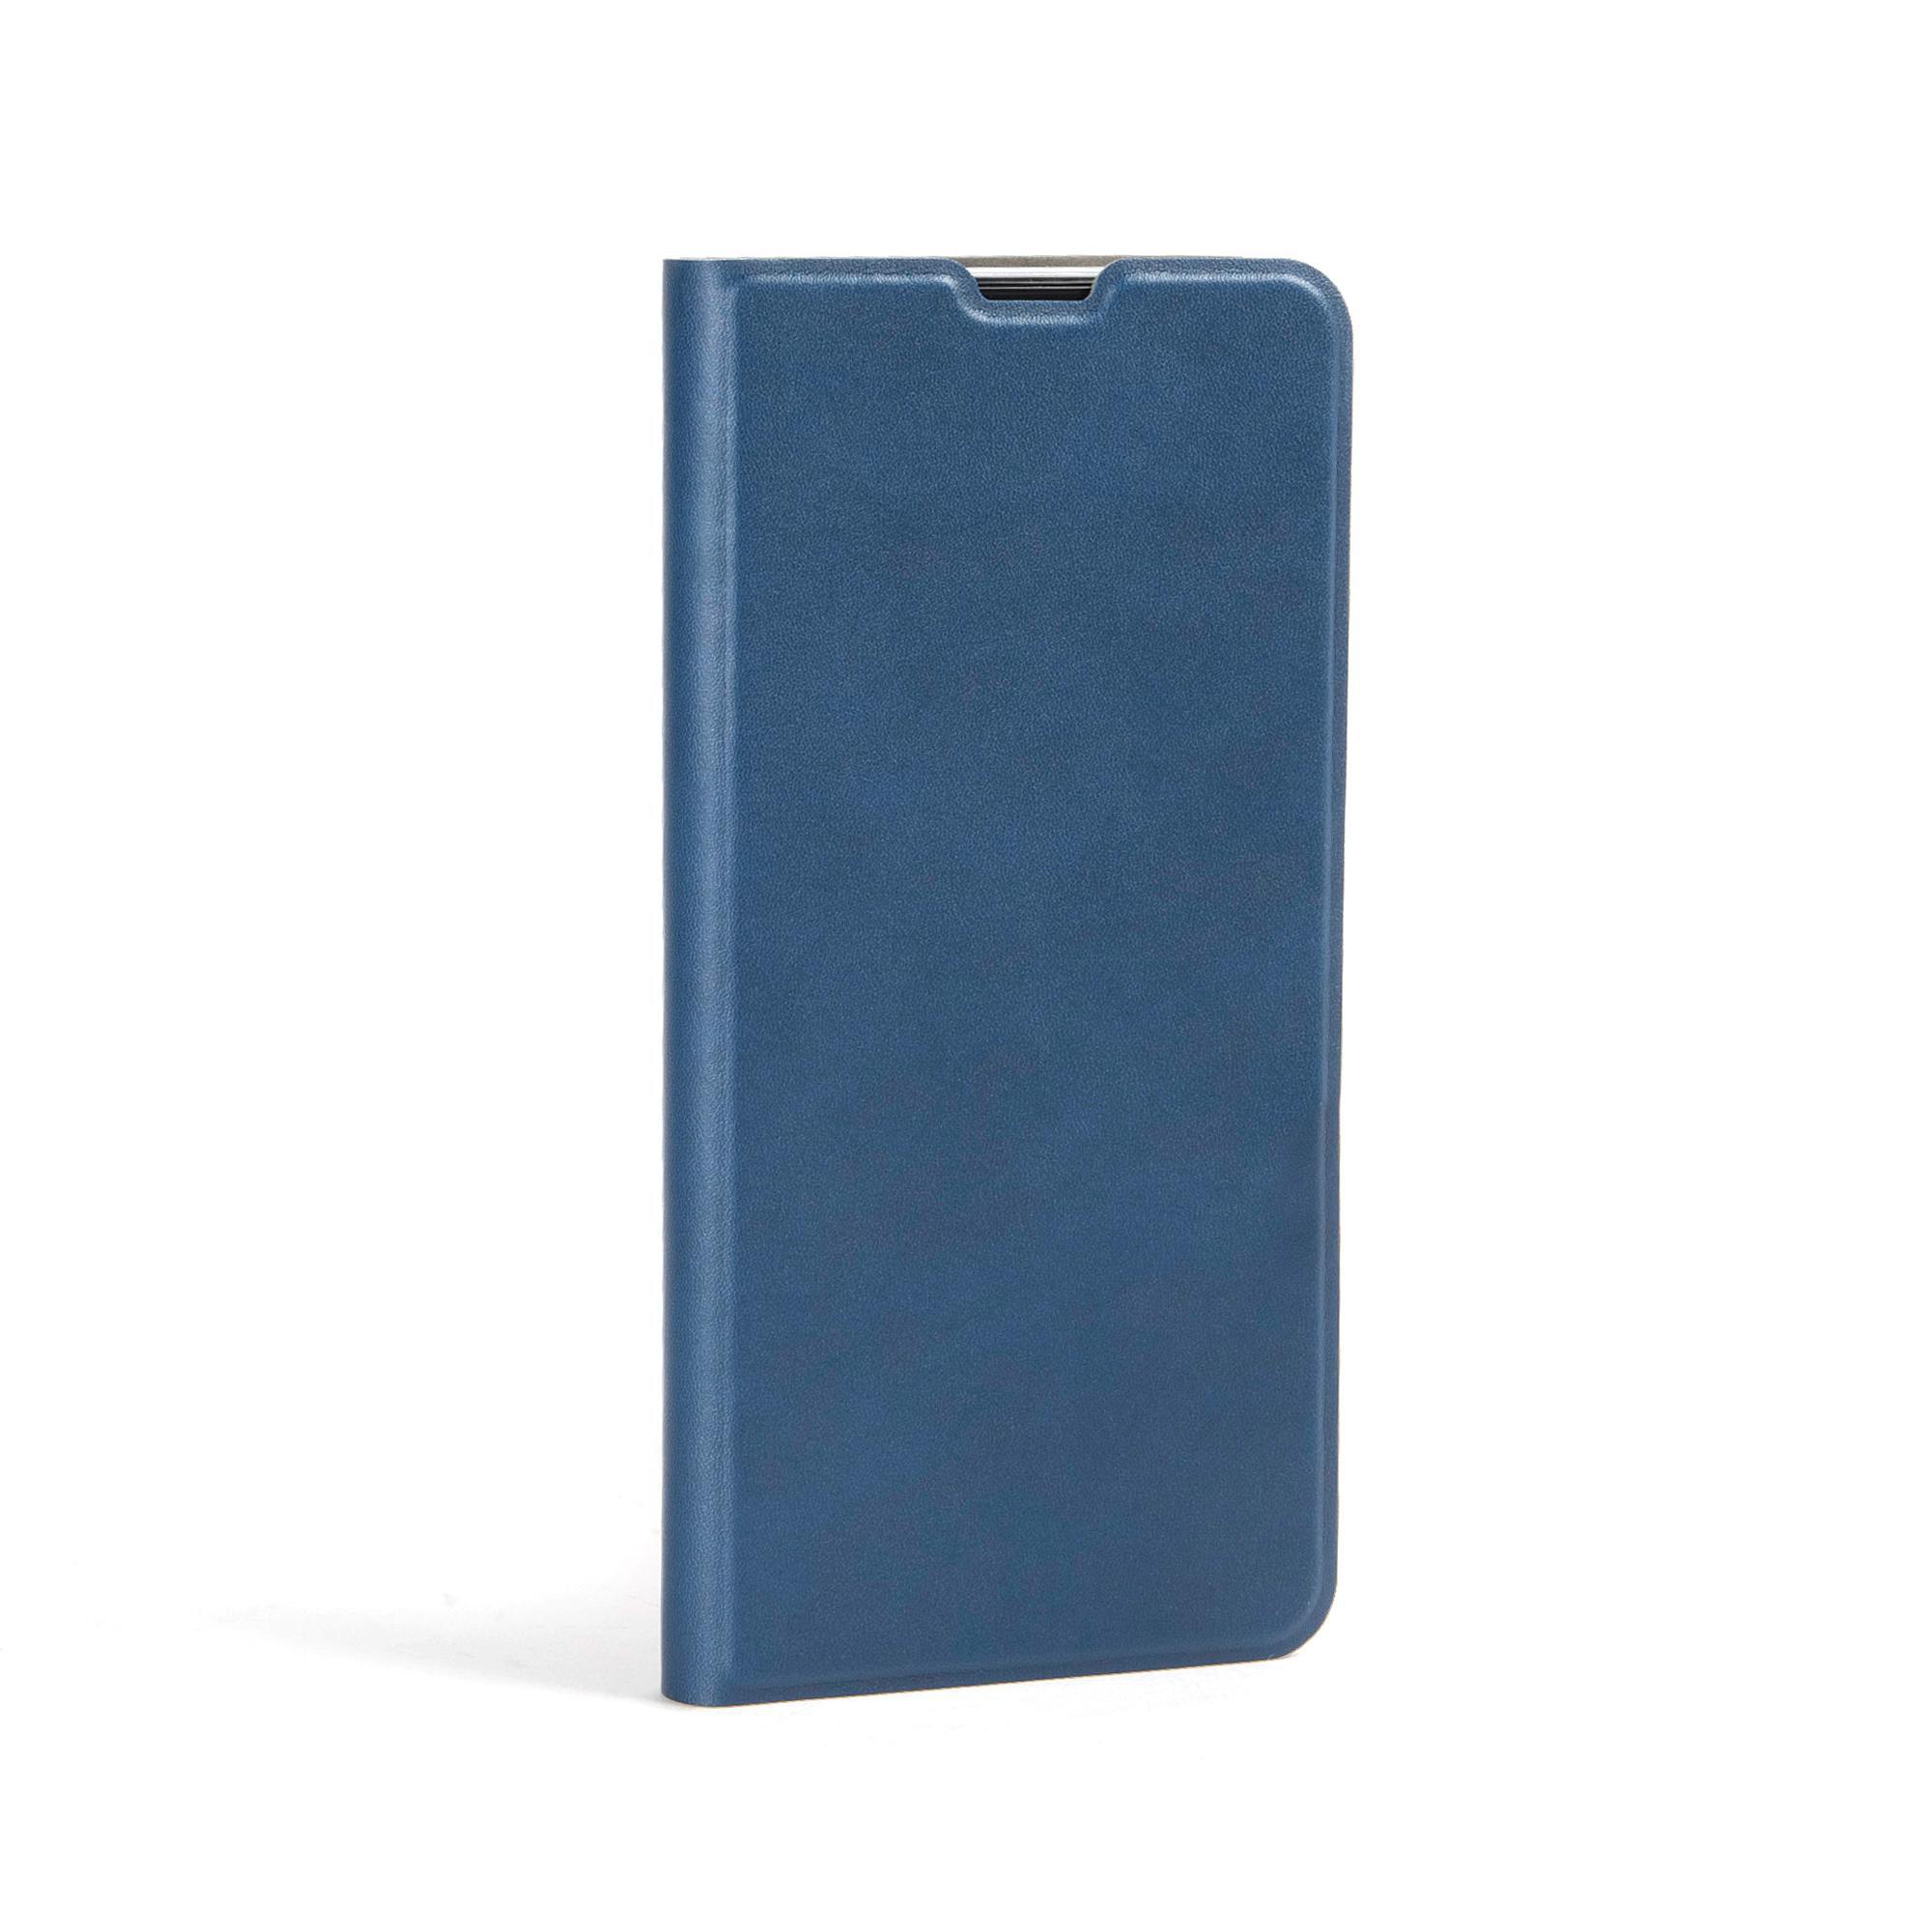 ISY ISC-5201, Blau A32, Bookcover, Samsung, Galaxy